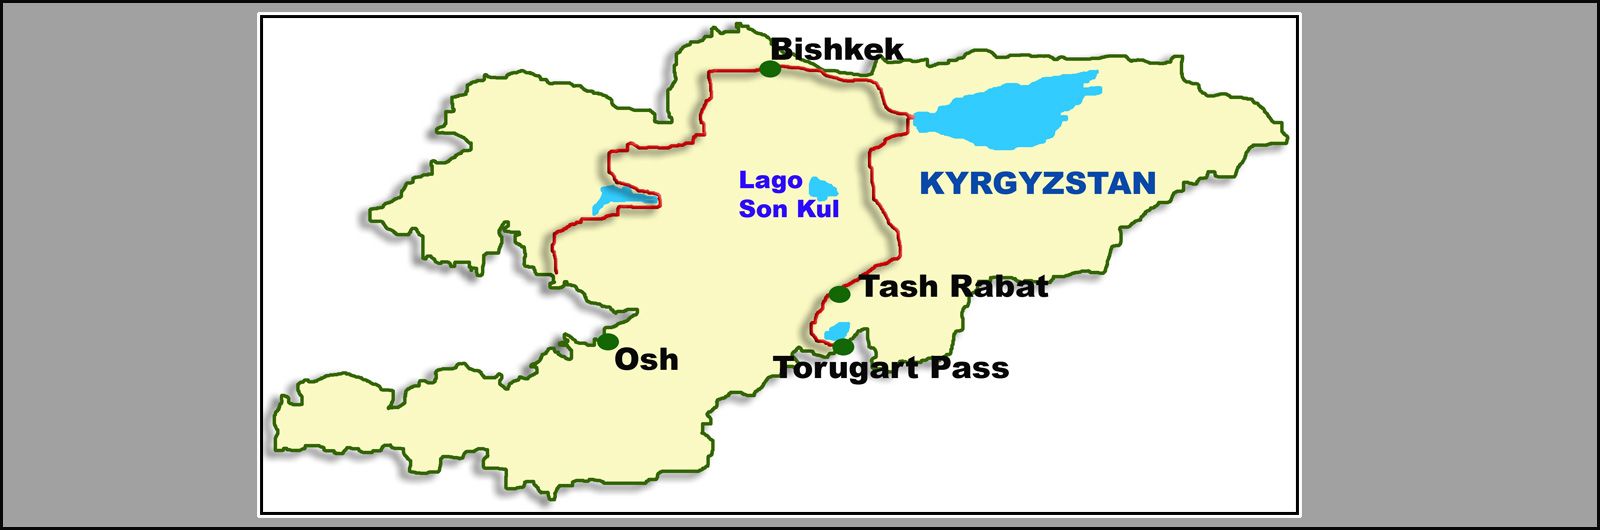 01 Ruta de la Seda: Ciudades y Lugares. Kirgyzstán